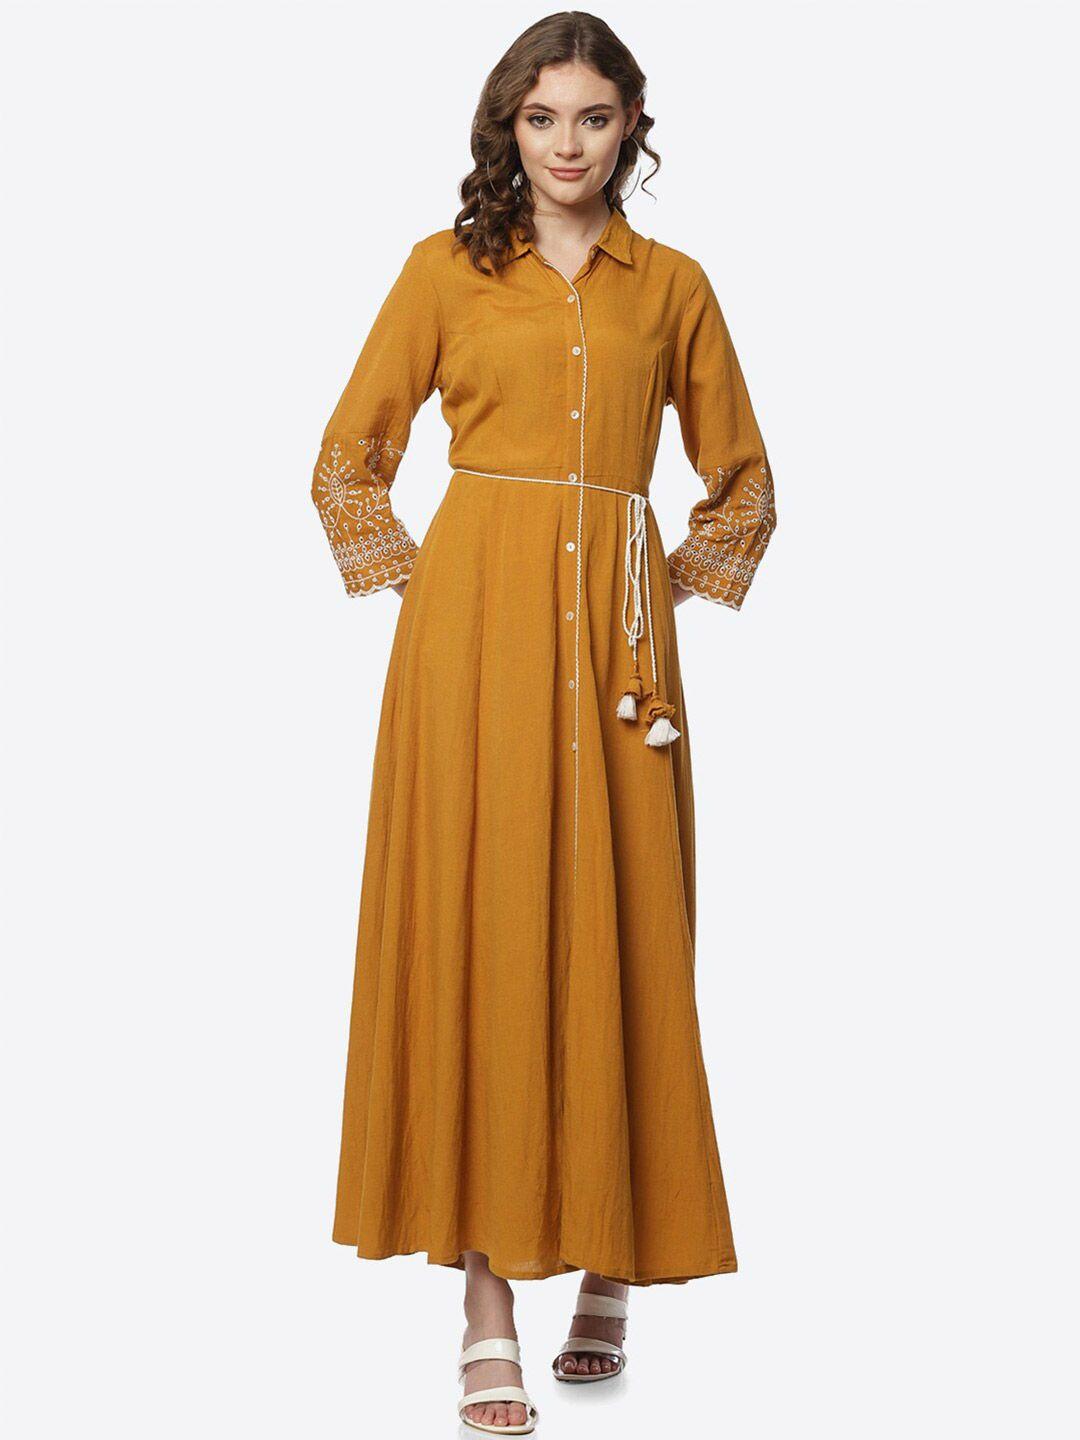 rangriti mustard yellow maxi dress